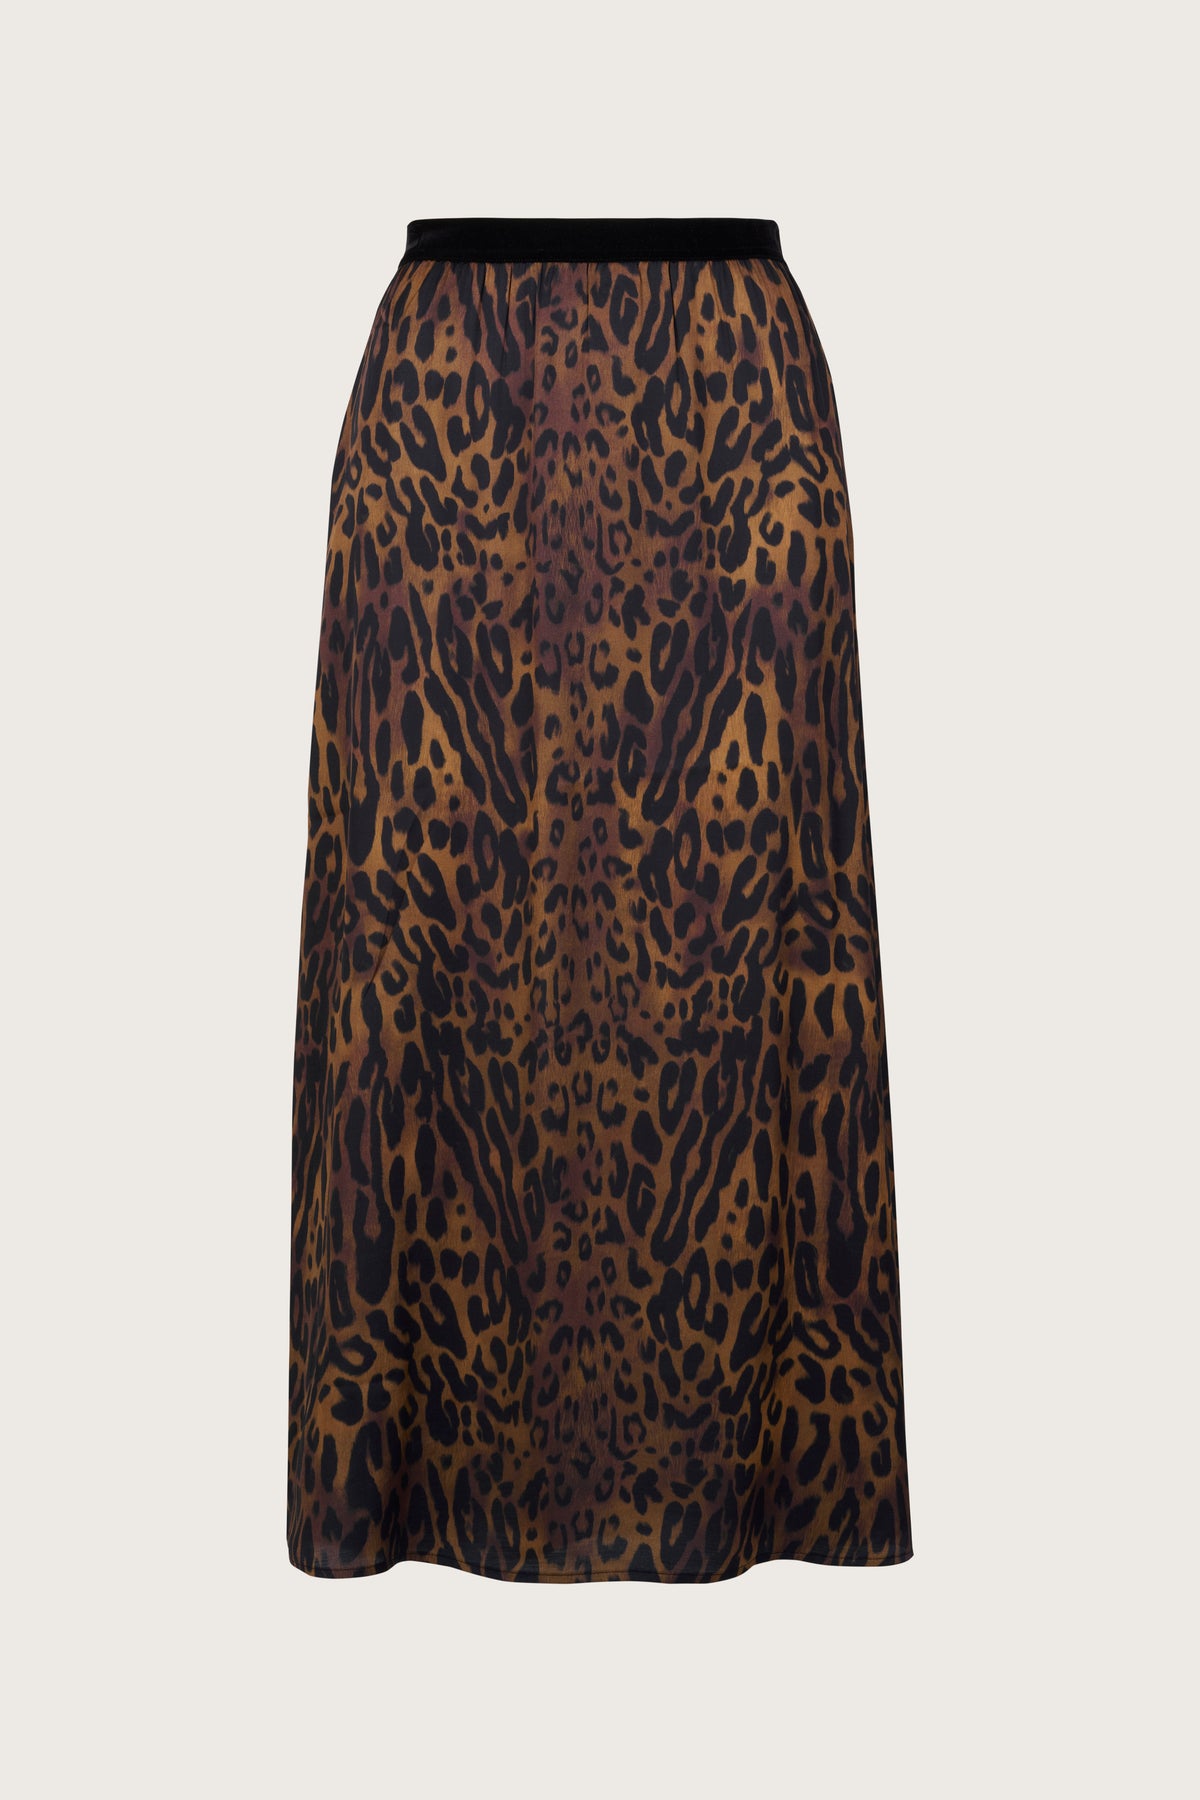 Leopard print slip skirt